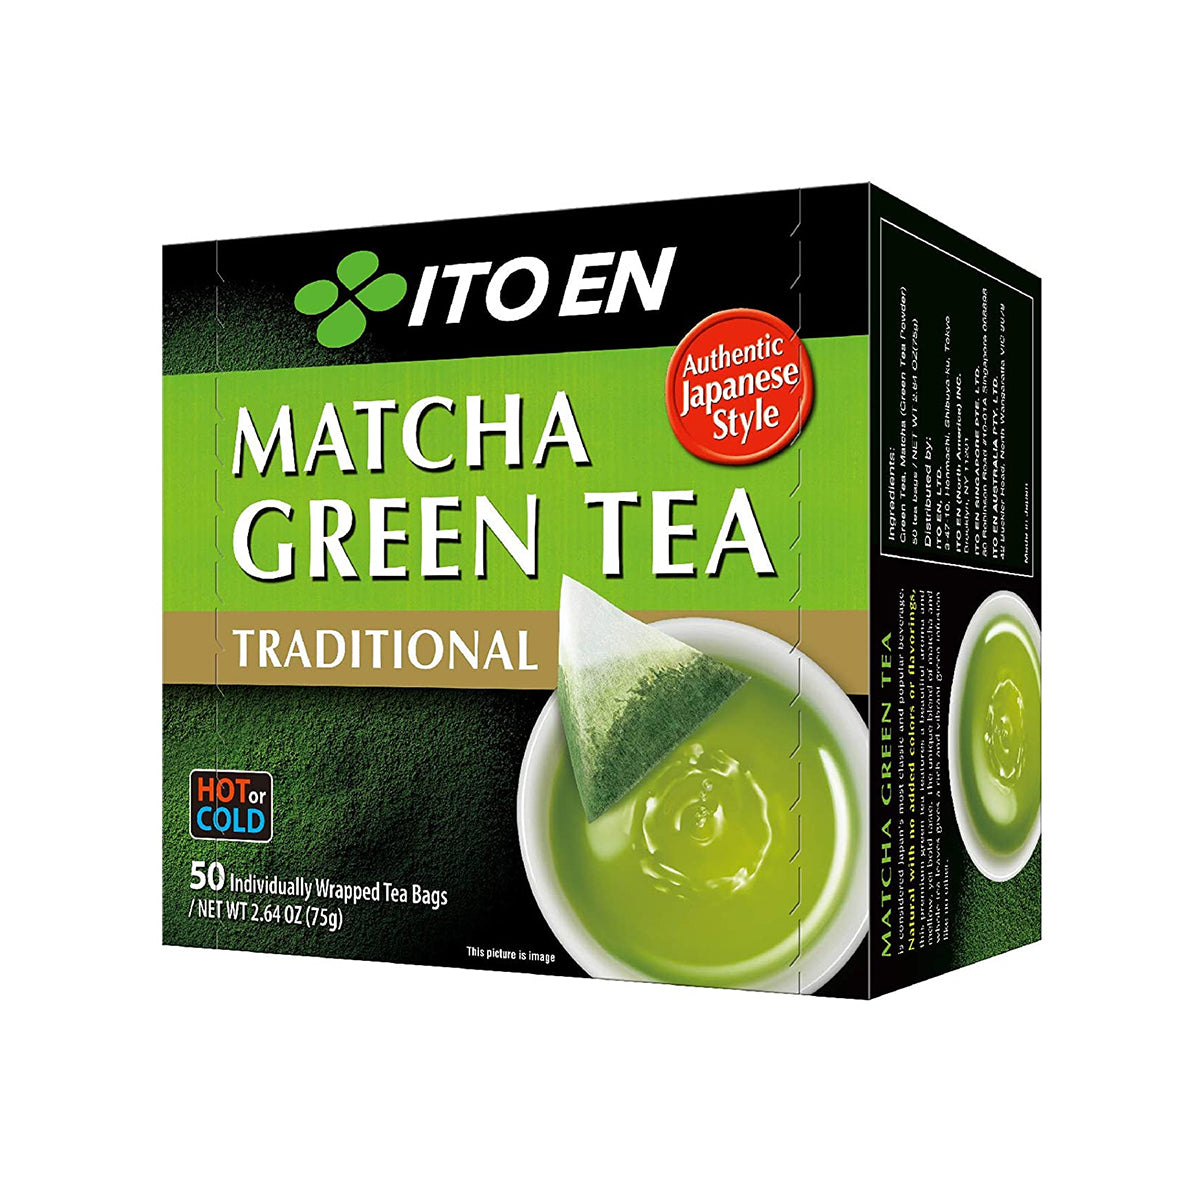 ito en matcha green tea bag - 50pc